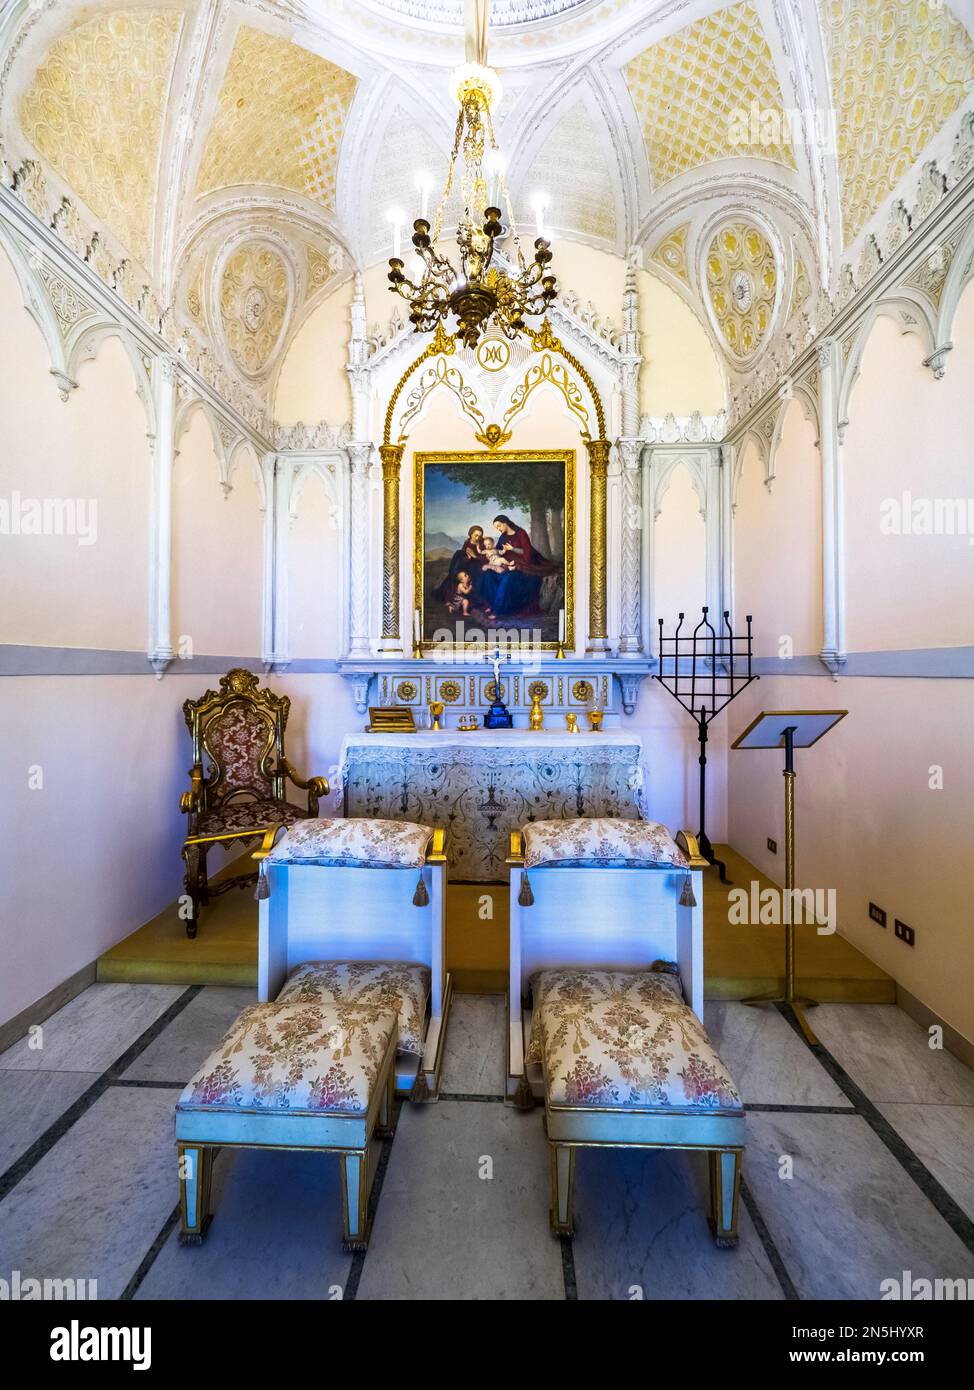 Sala della Preghiera (Gebetssaal), auch bekannt als Kapelle der Königin oder Carolina, ein wunderbares Beispiel der sizilianischen Neogotik mit weißem und goldenem Stuck im normannischen Palast (Palazzo dei Normanni) - Palermo, Sizilien, Italien Stockfoto